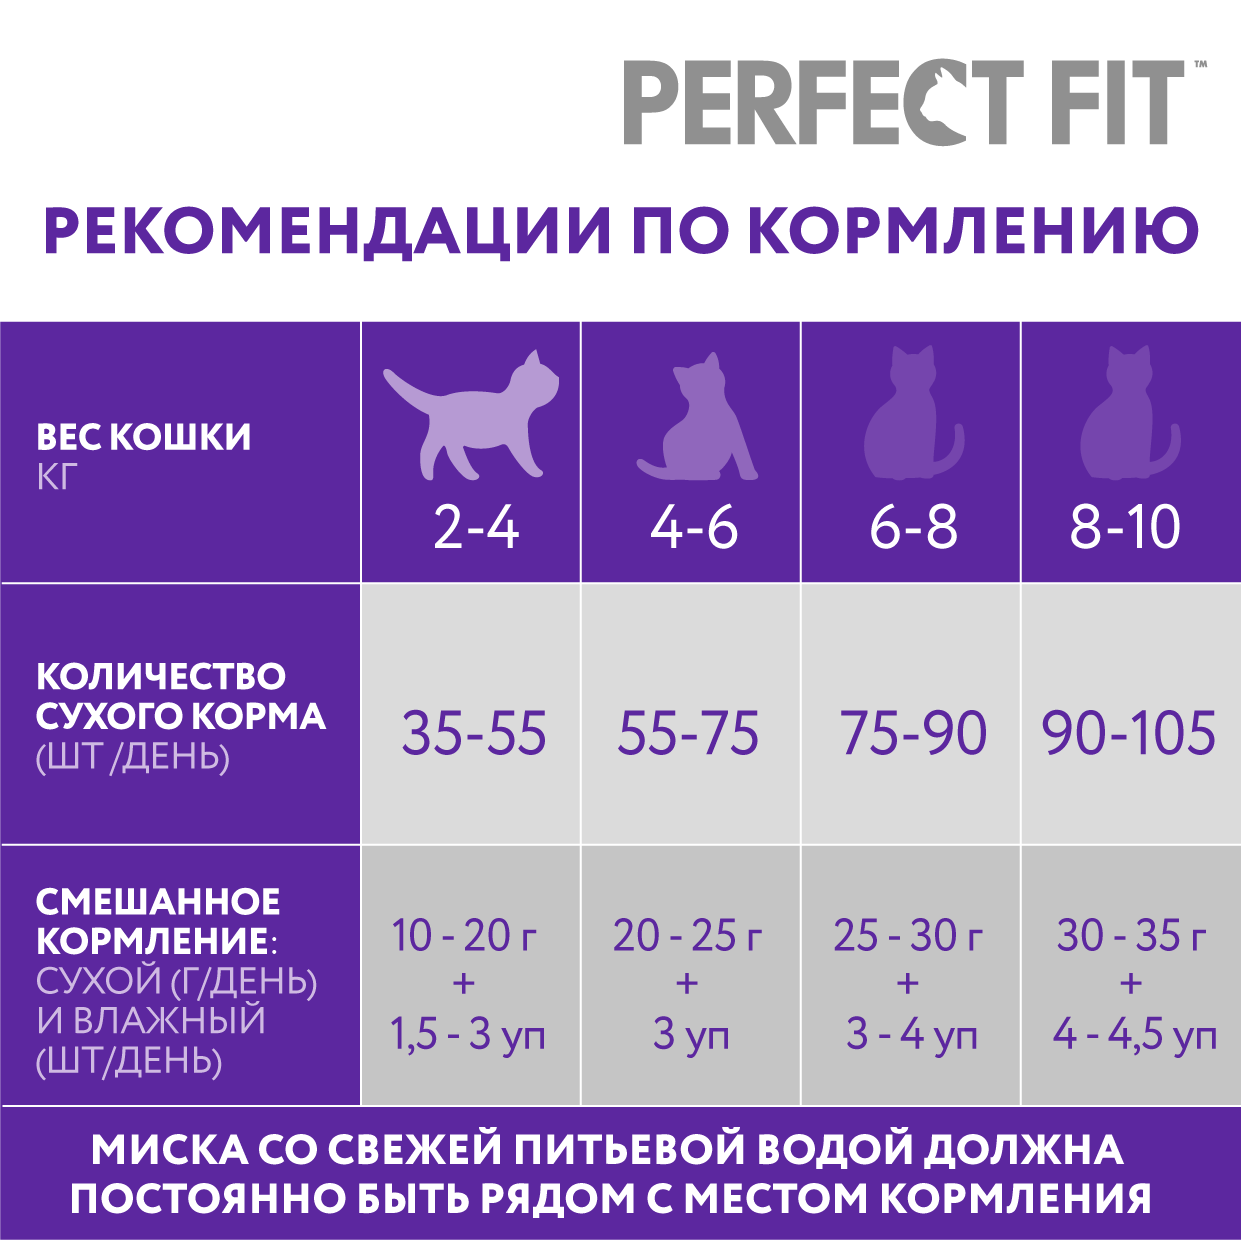 Корм Perfect Fit для кошек для поддержания здоровья почек с лососем